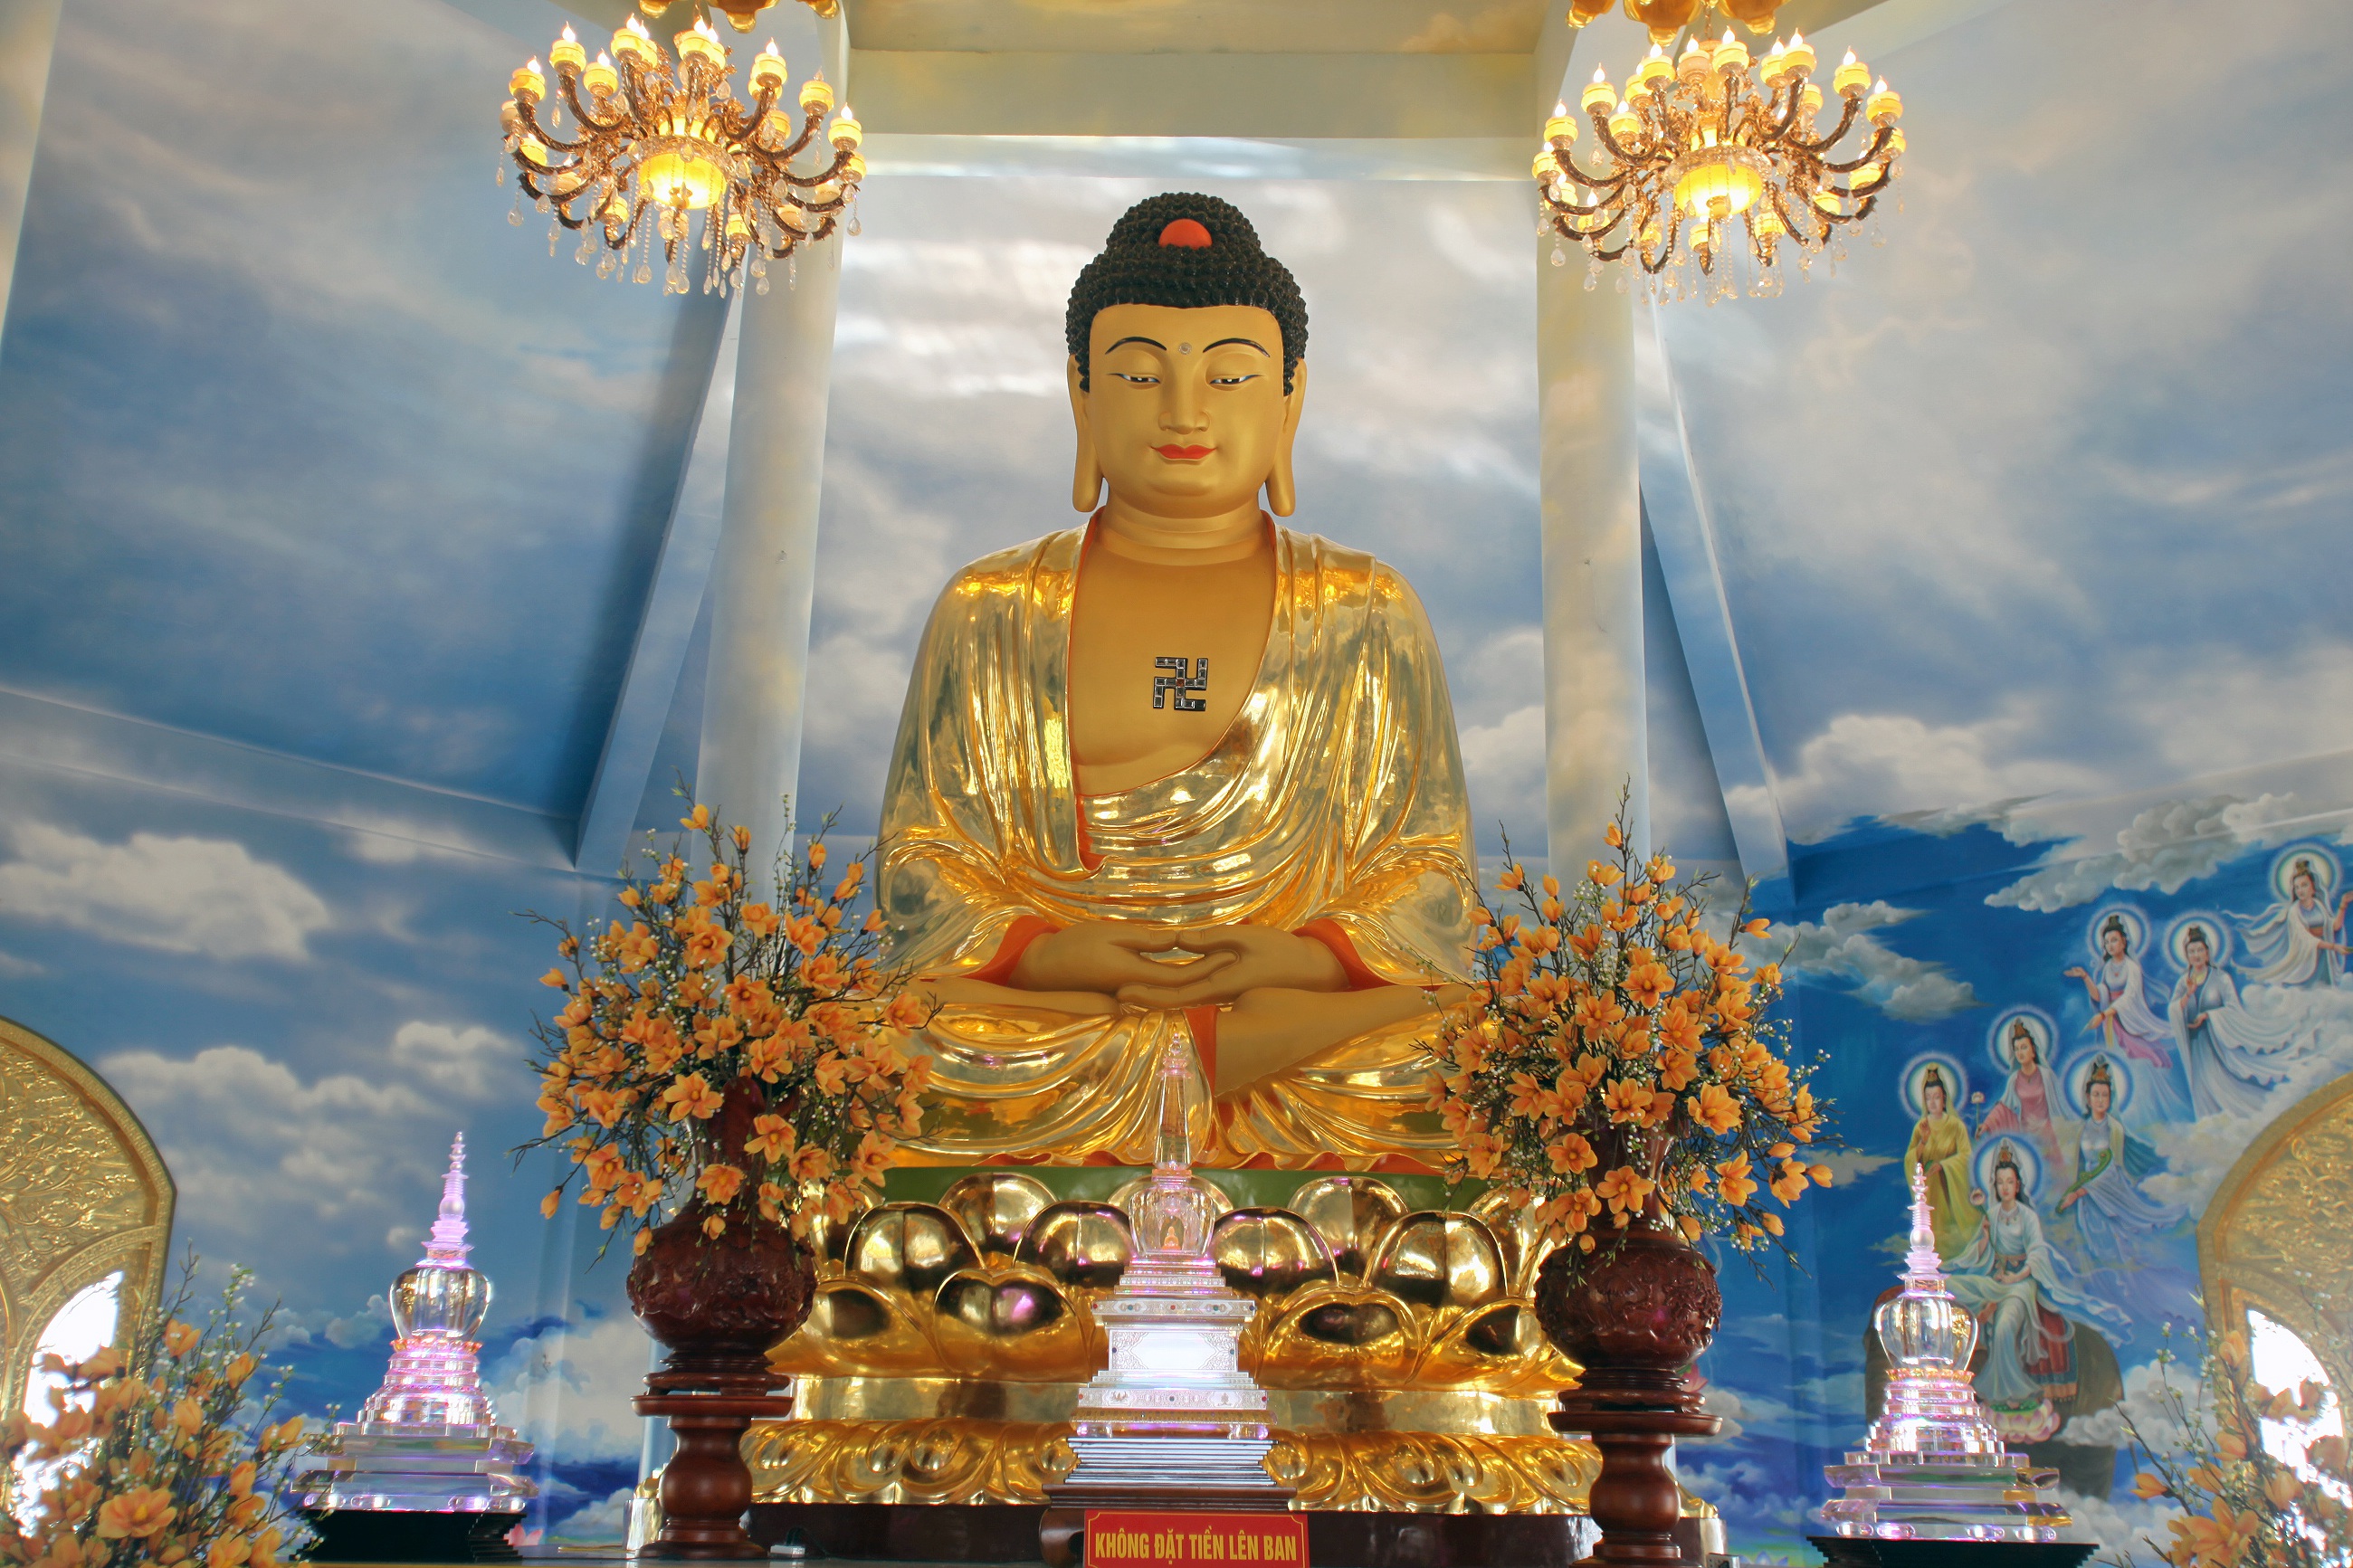 Ngôi chùa dát đầy vàng là vàng ngay gần Thủ đô Hà Nội không phải ai cũng biết - Ảnh 9.